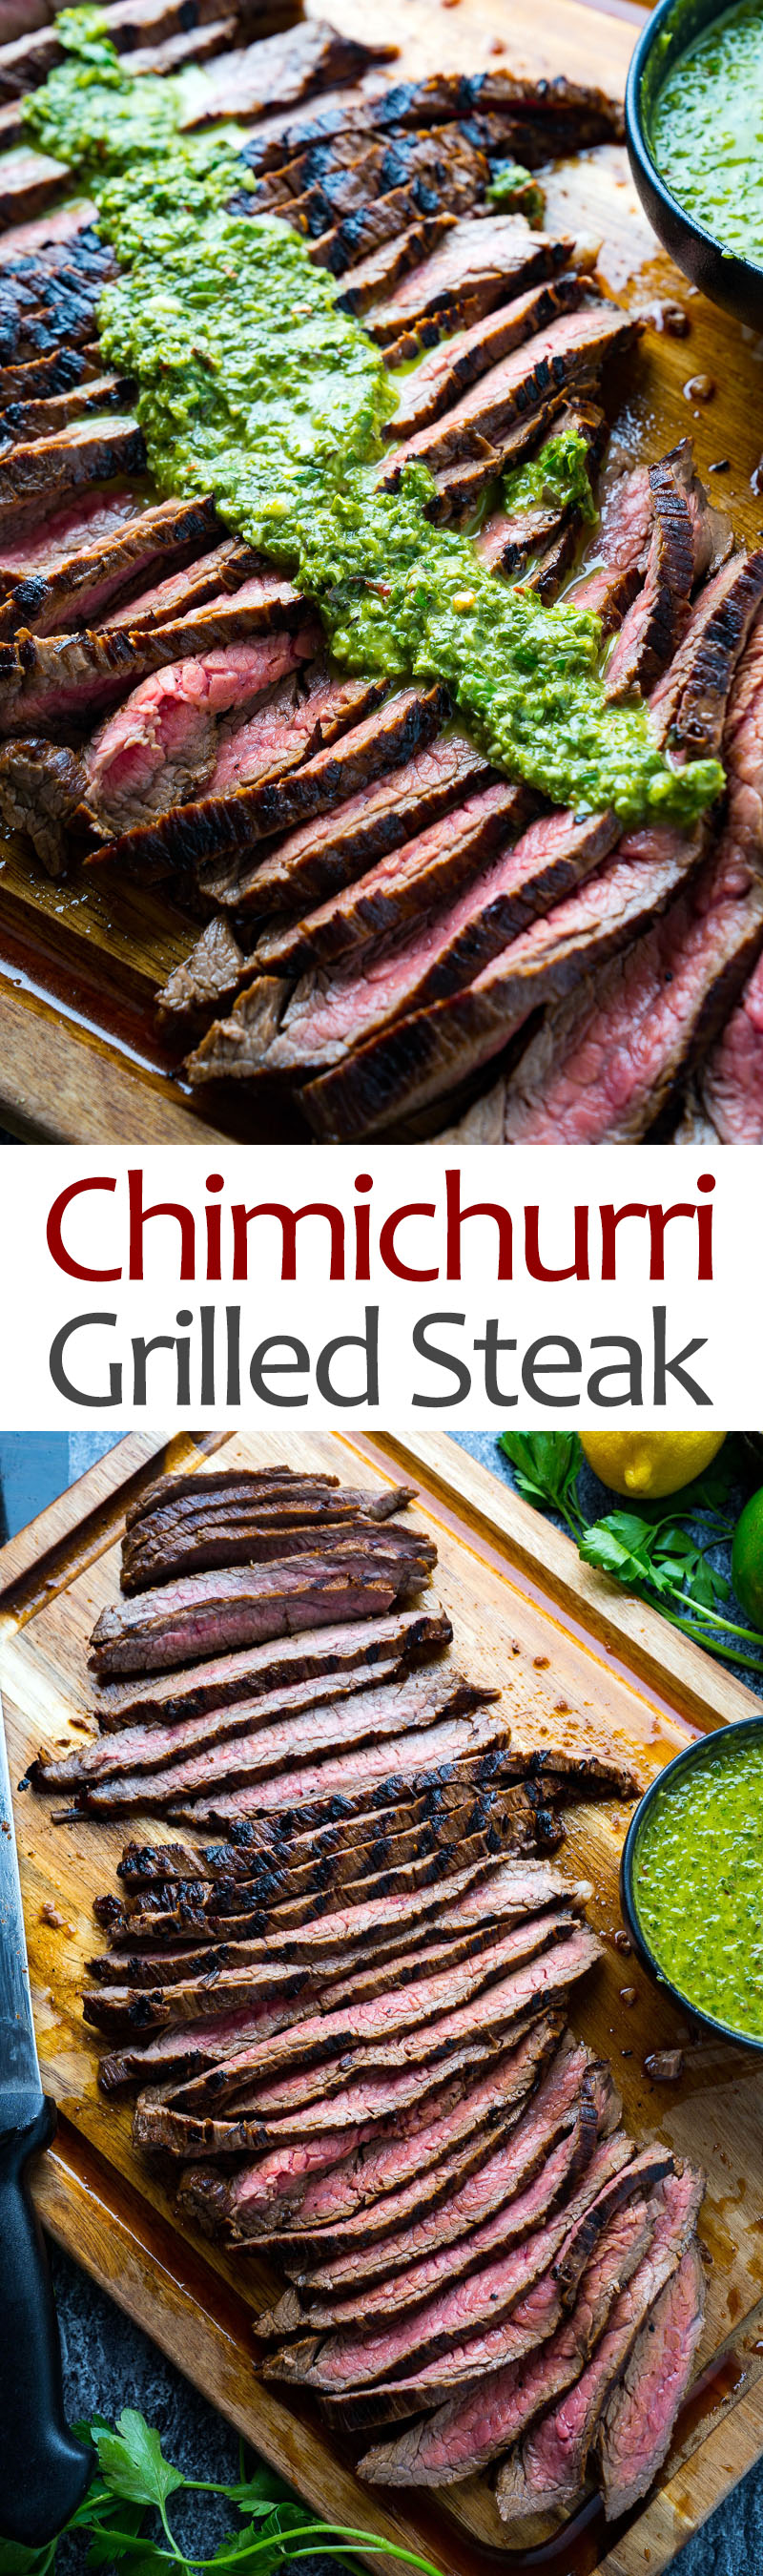 Chimichurri Grilled Steak